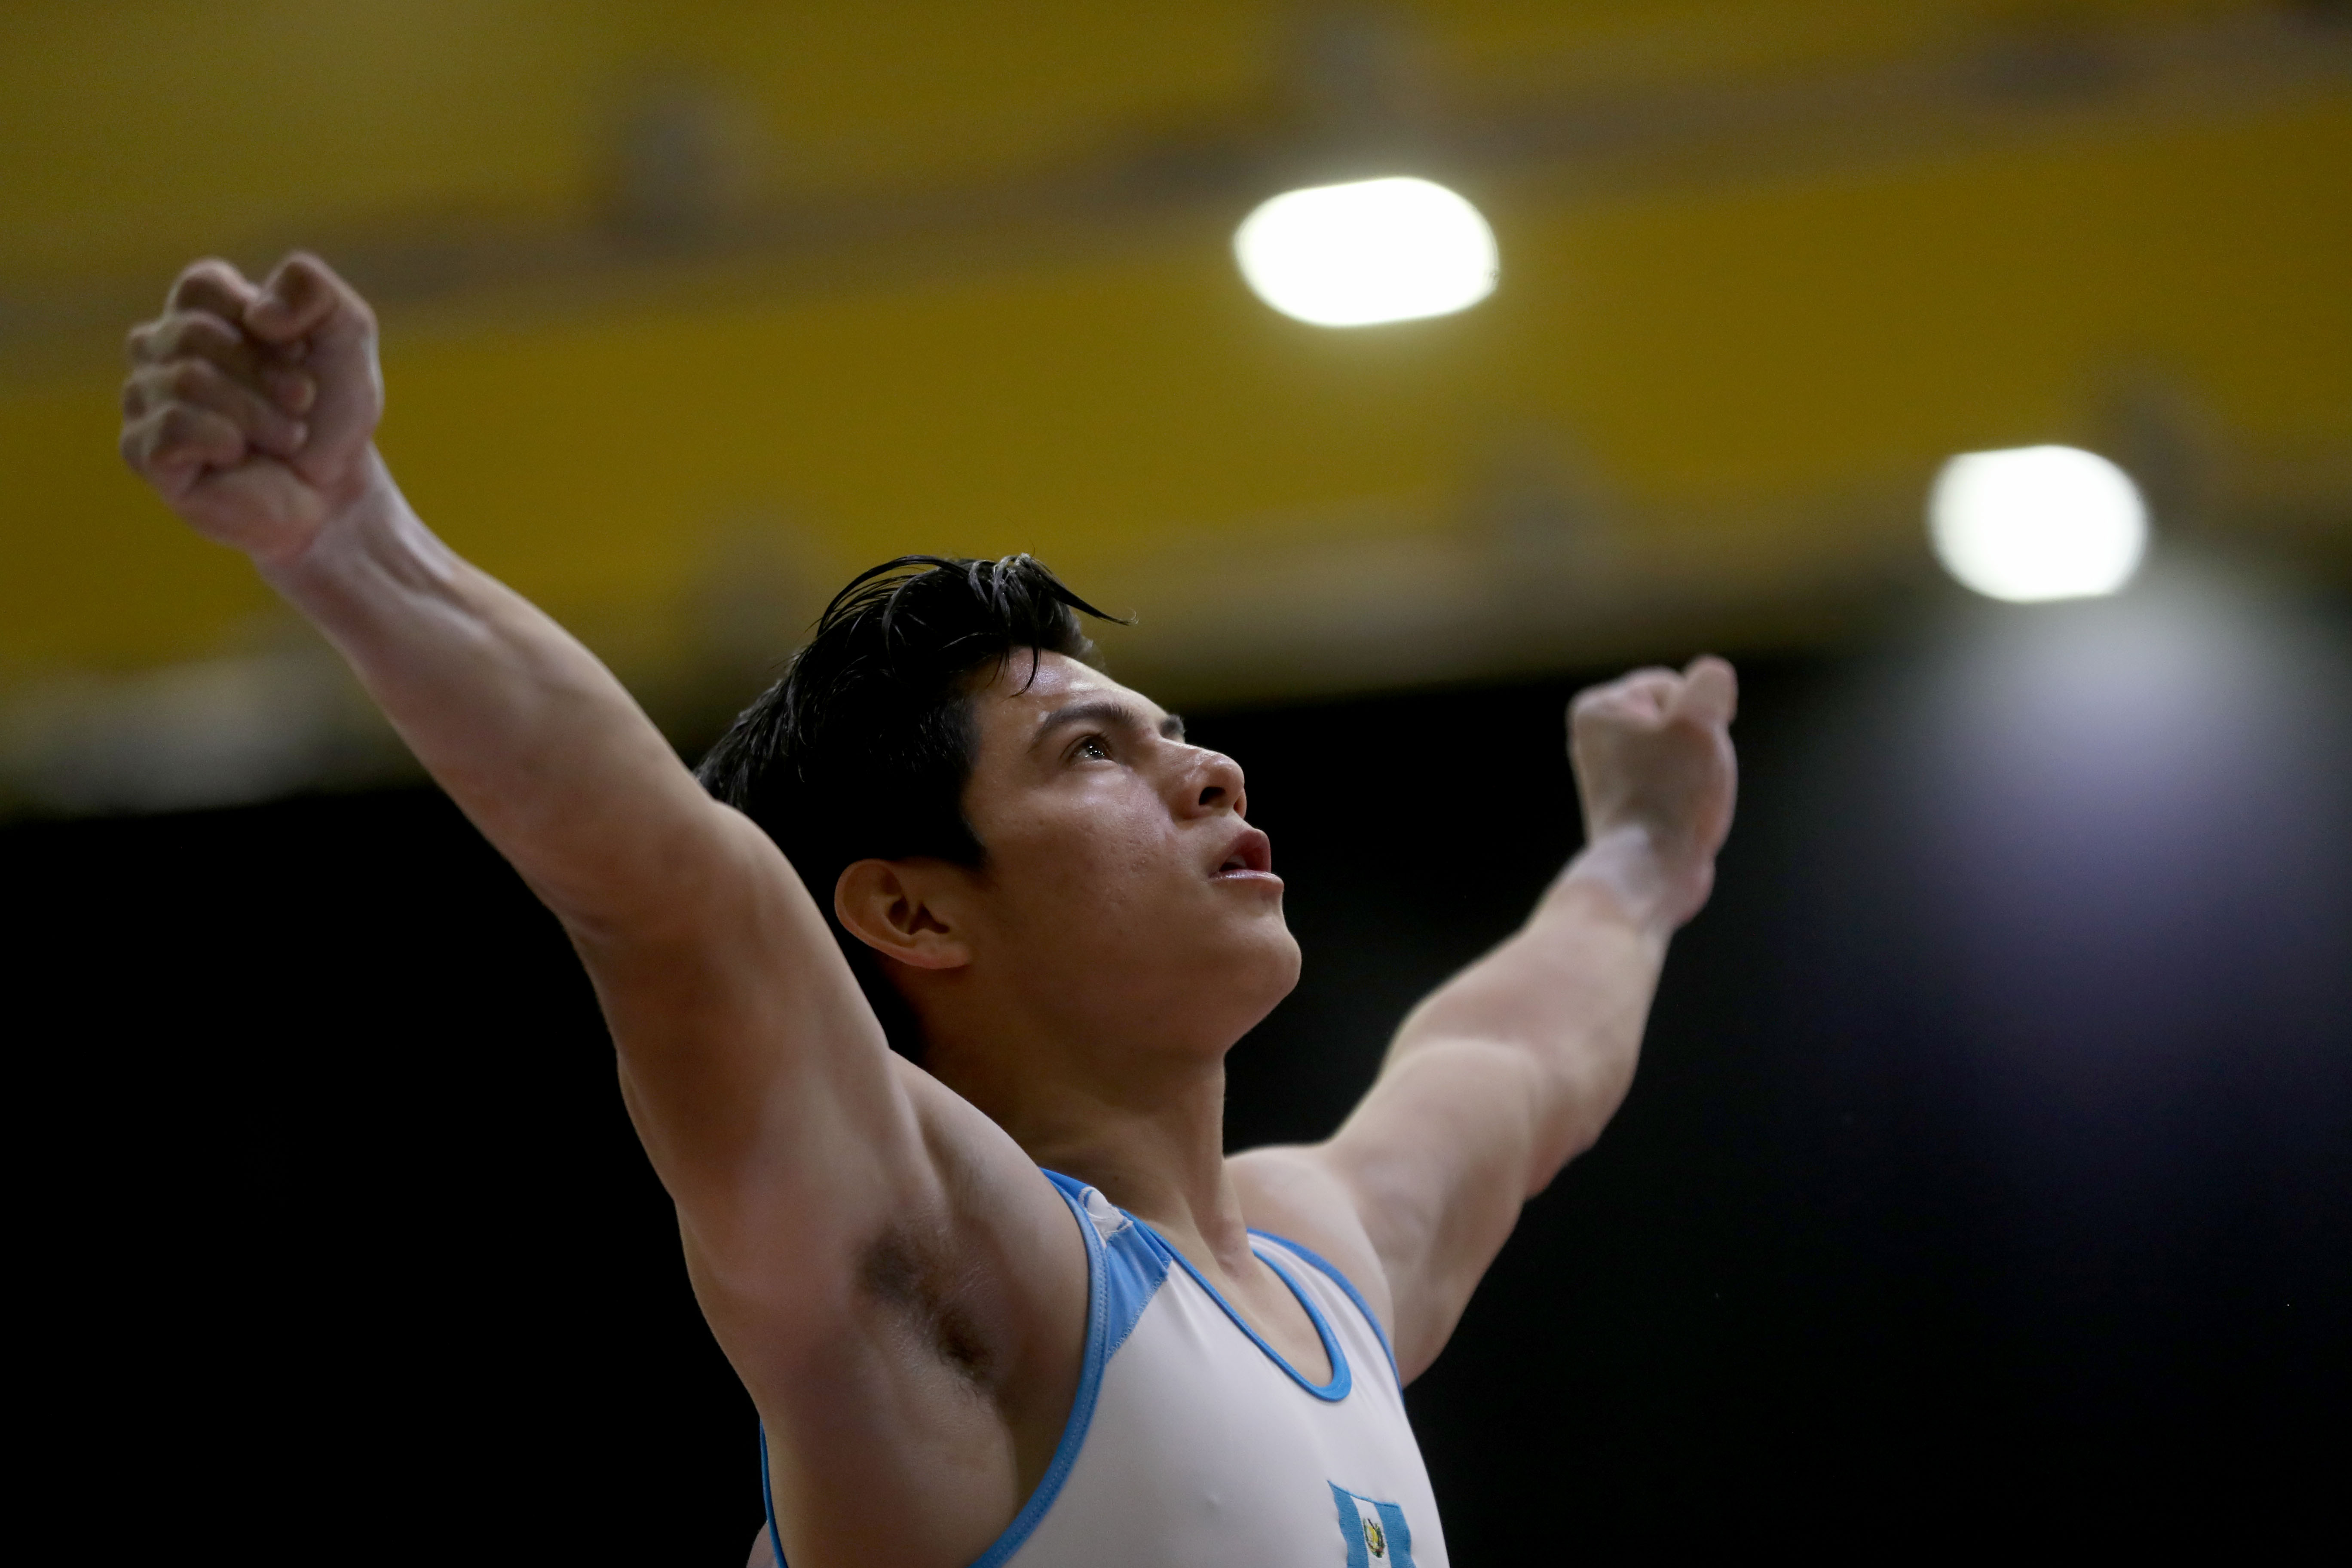 Vega es una de las grandes figuras de la gimnasia artística nacional. (Foto Prensa Libre: Carlos Vicente)